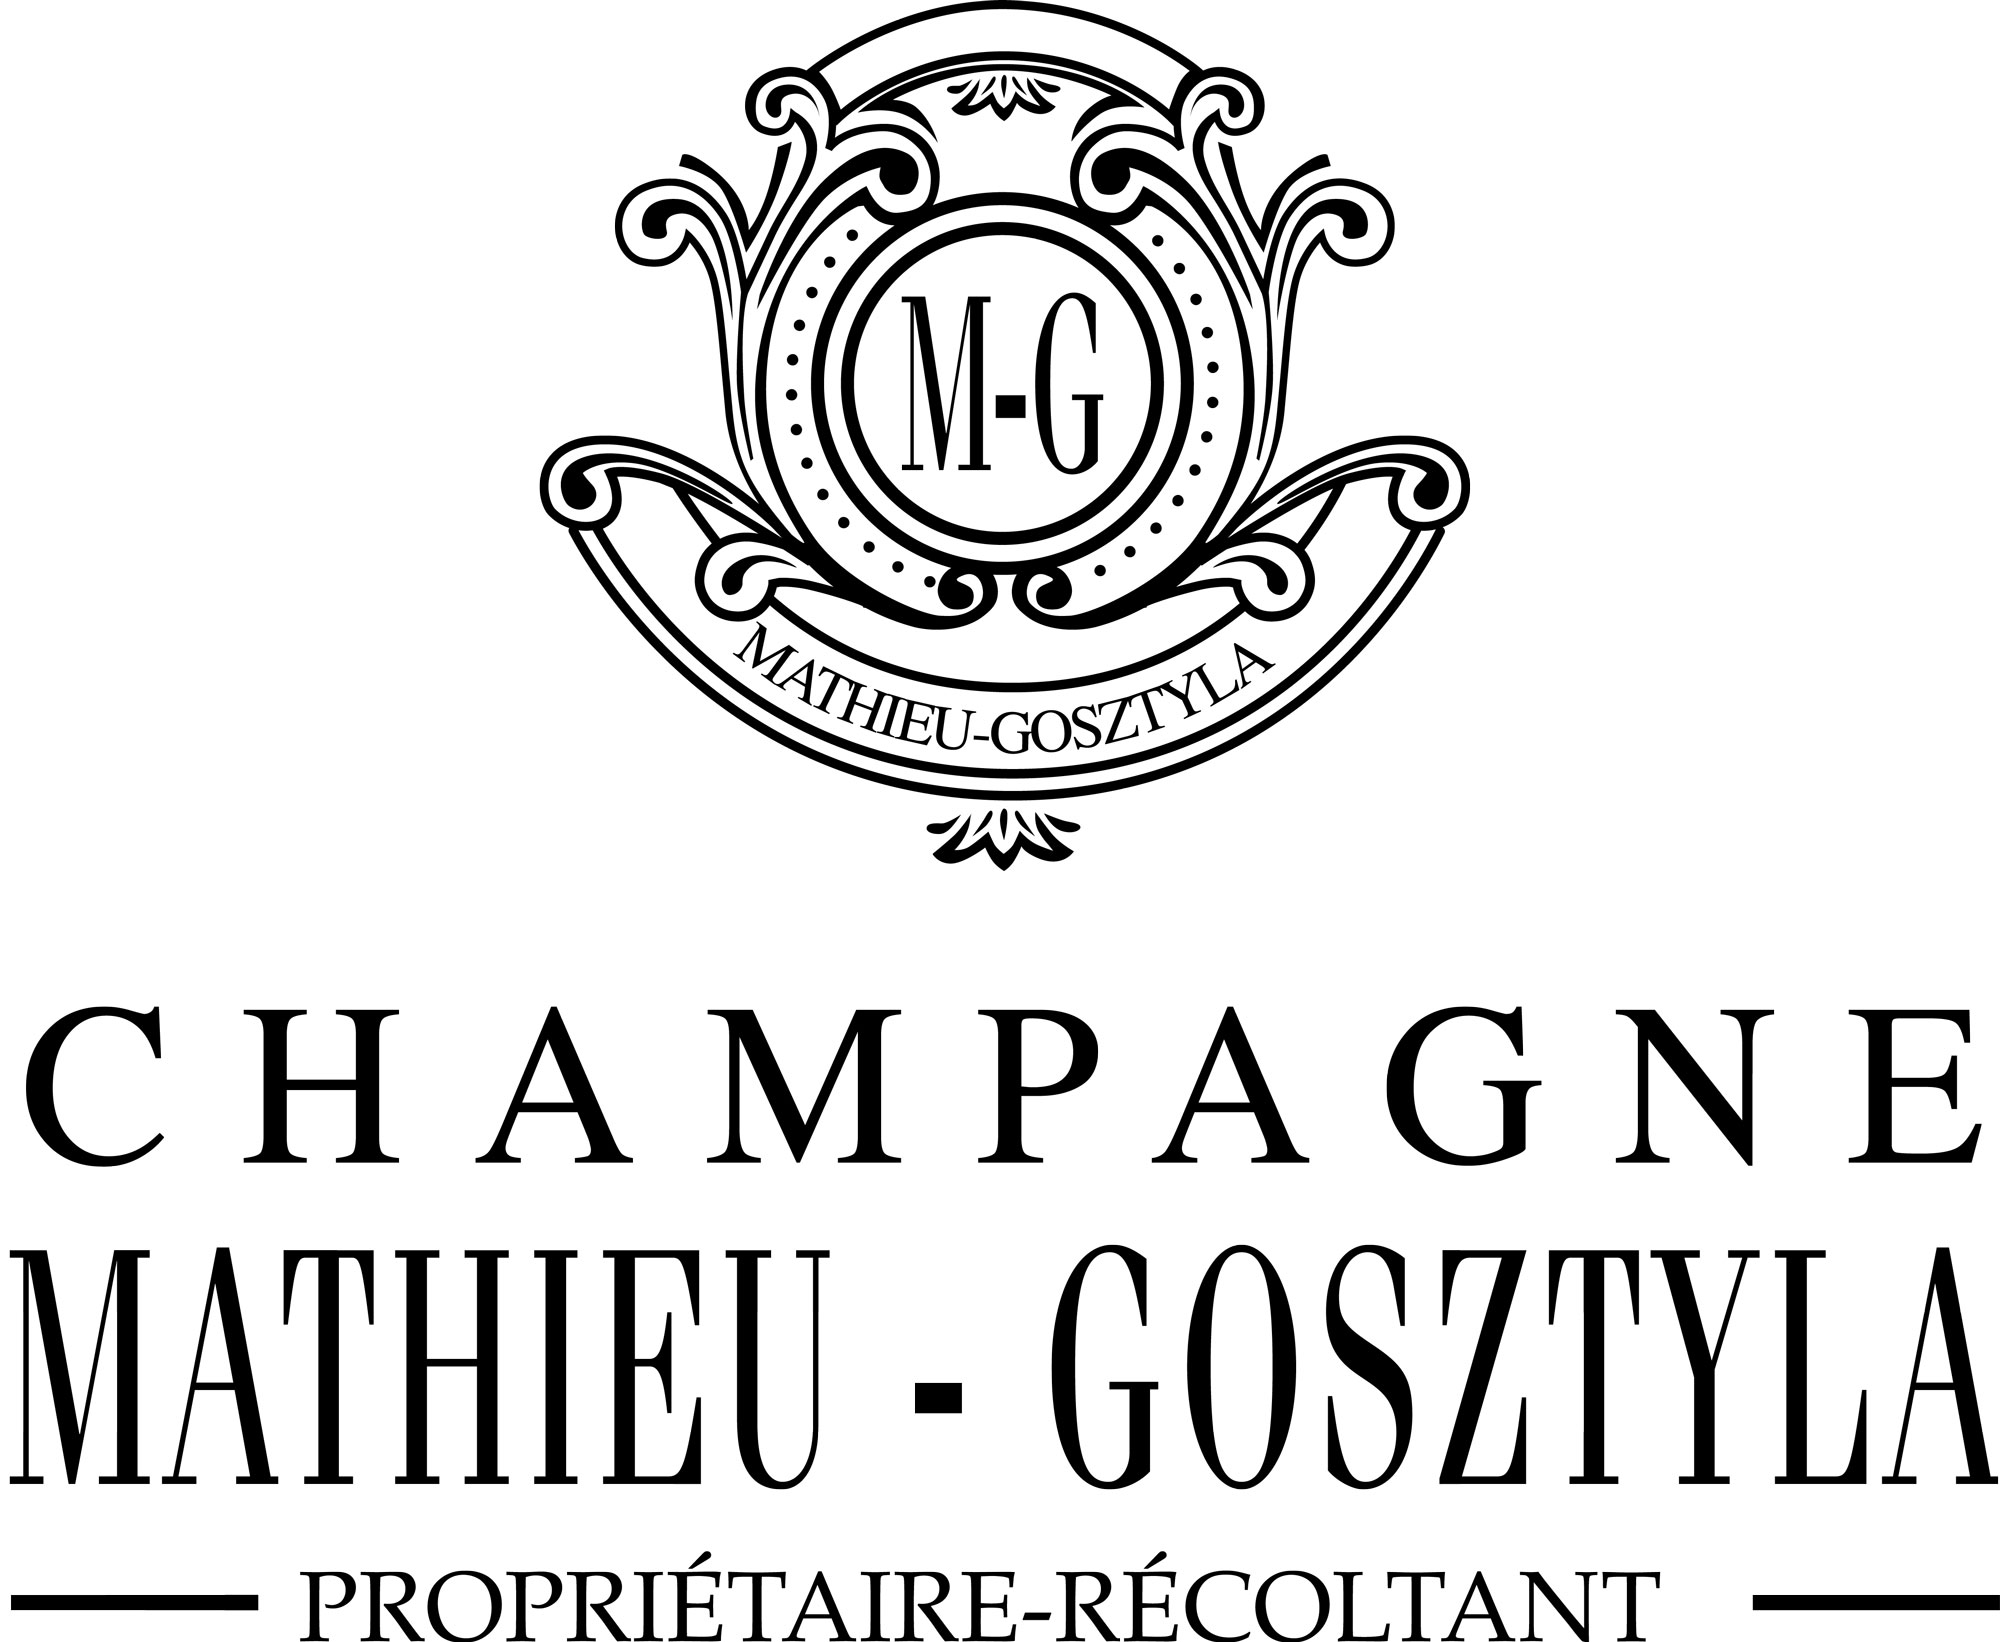 Champagne Mathieu-Gosztyla